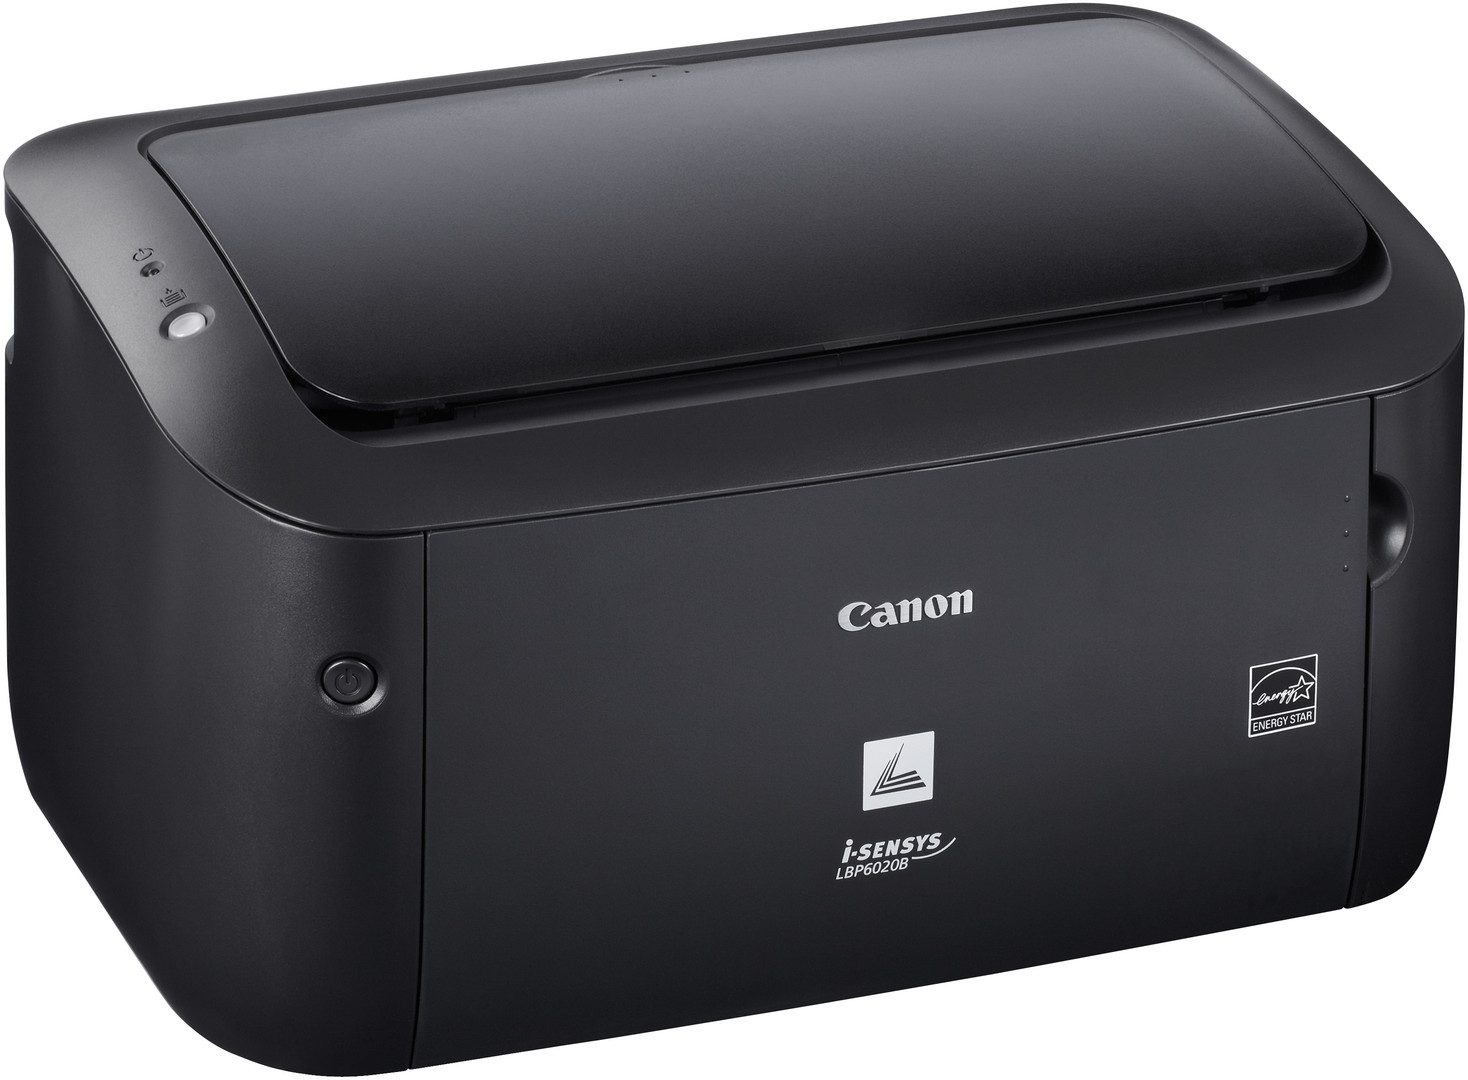 Скачать драйвер принтера Canon i-SENSYS LBP6020